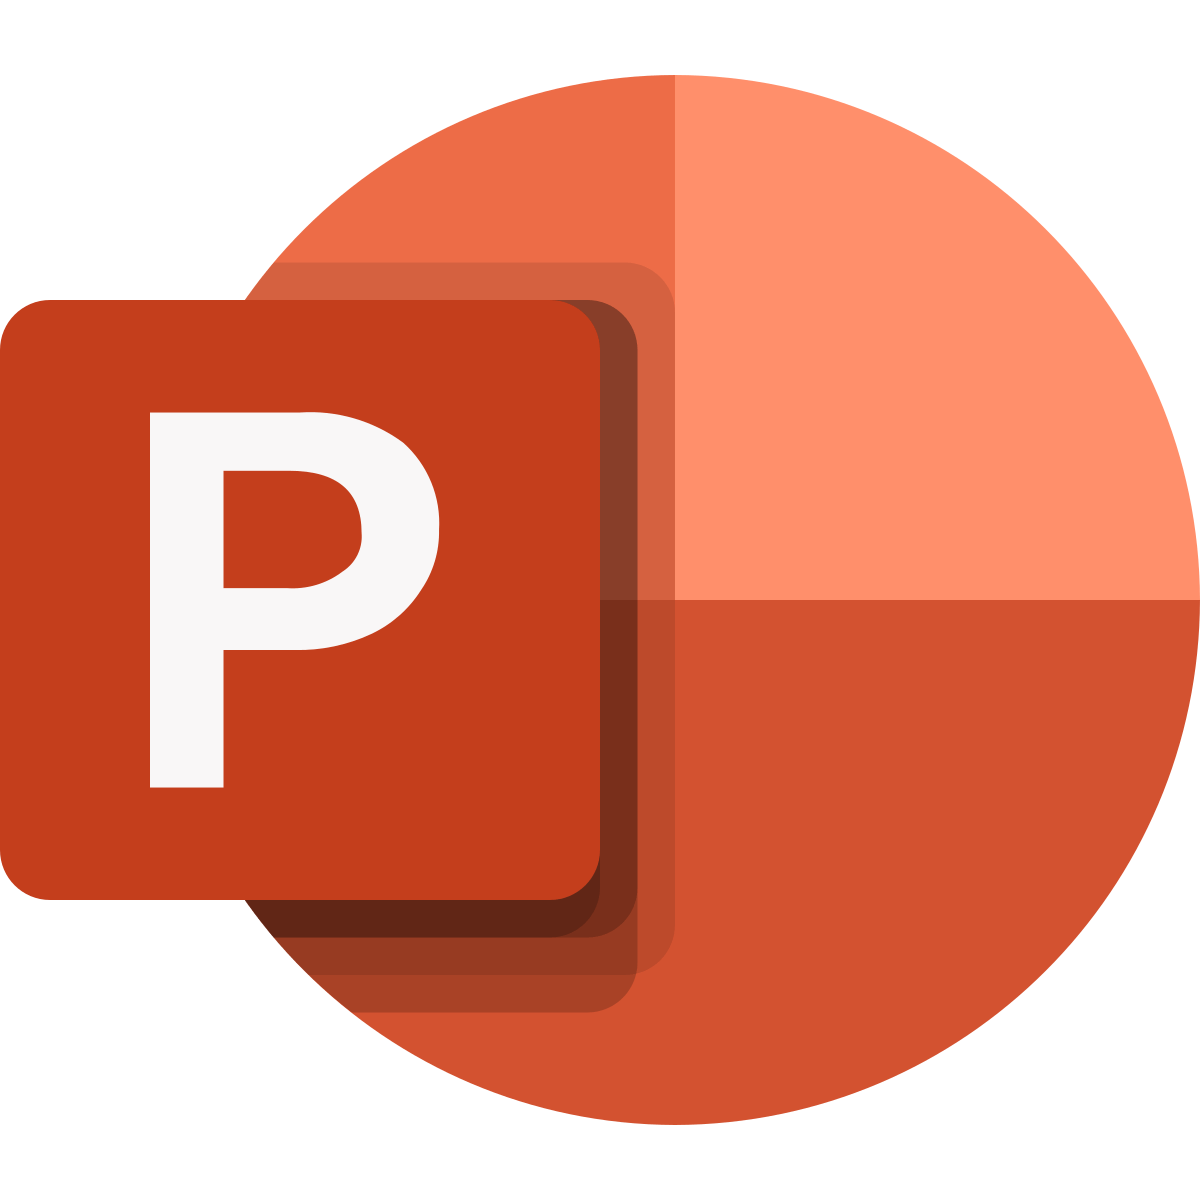 Powepoint Logo - Microsoft PowerPoint